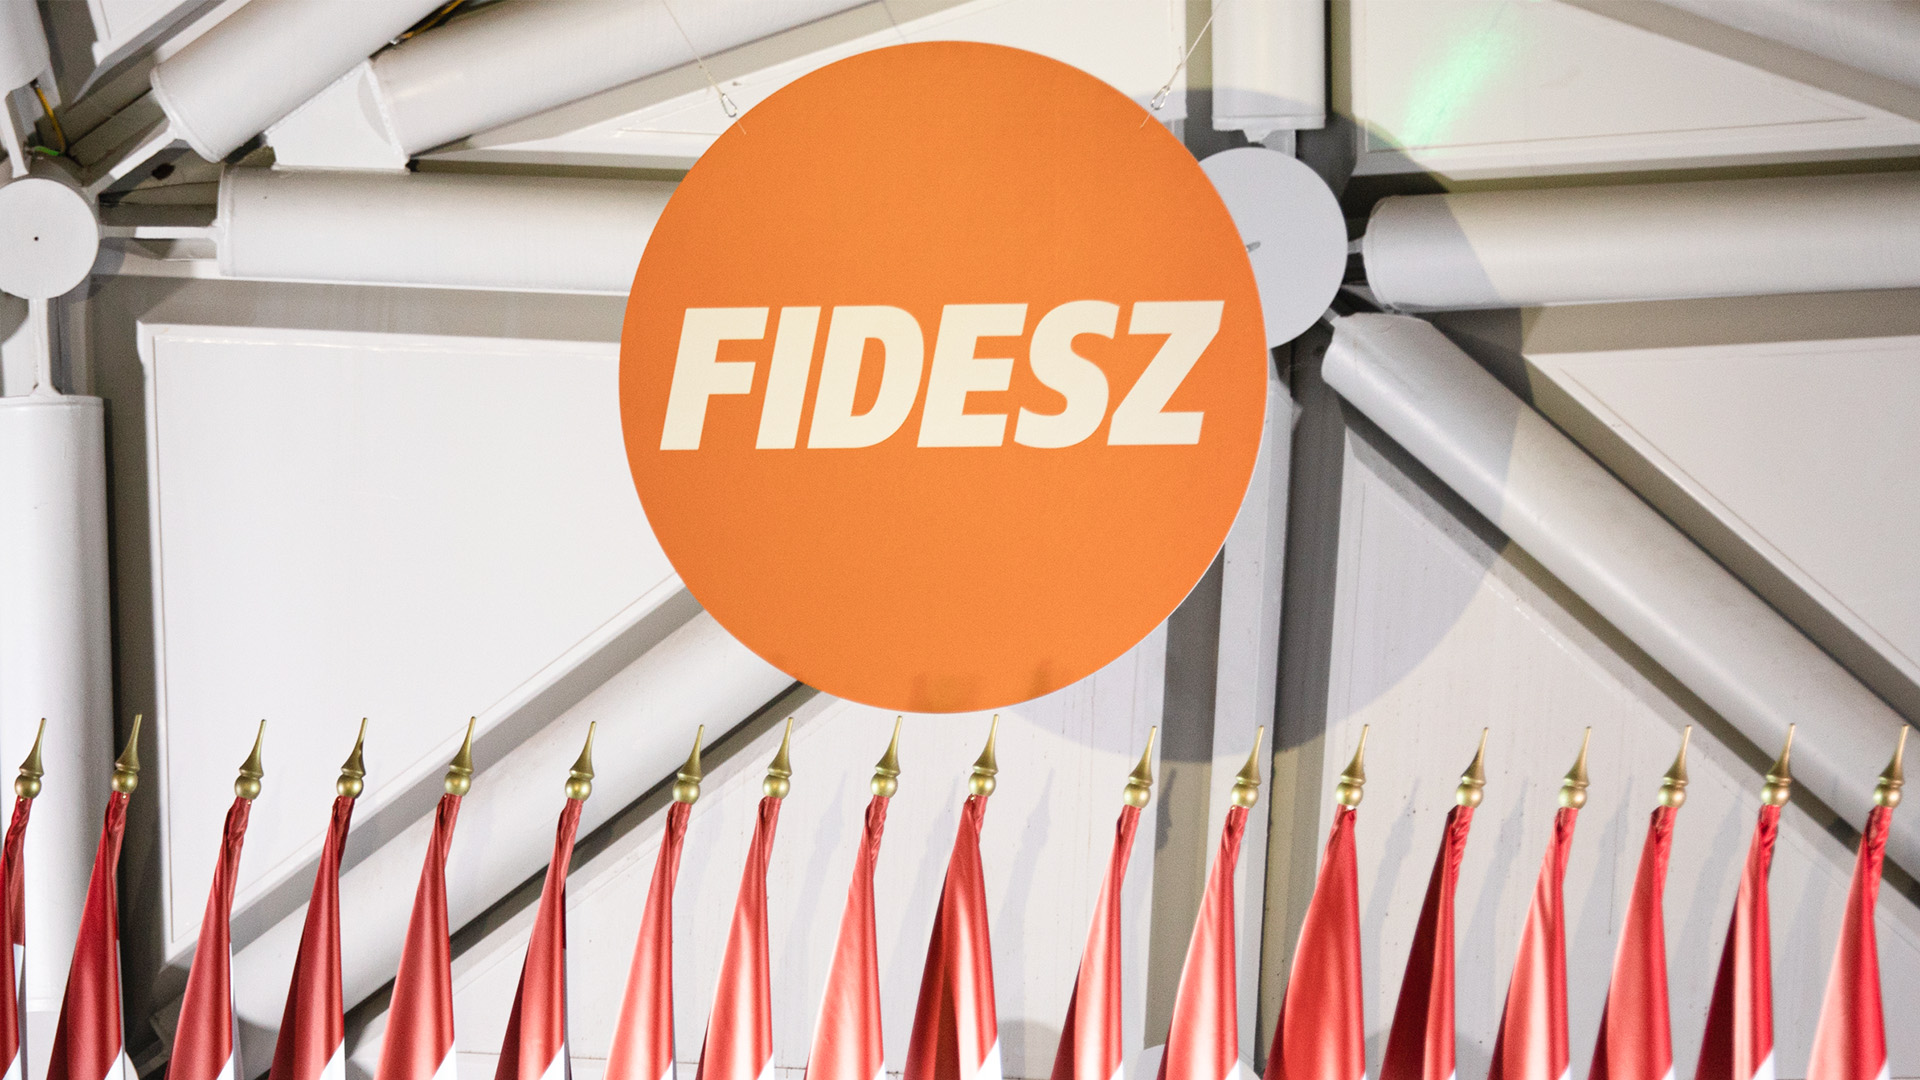 Kegyelmi botrány után: félmillió szavazót vesztett a Fidesz